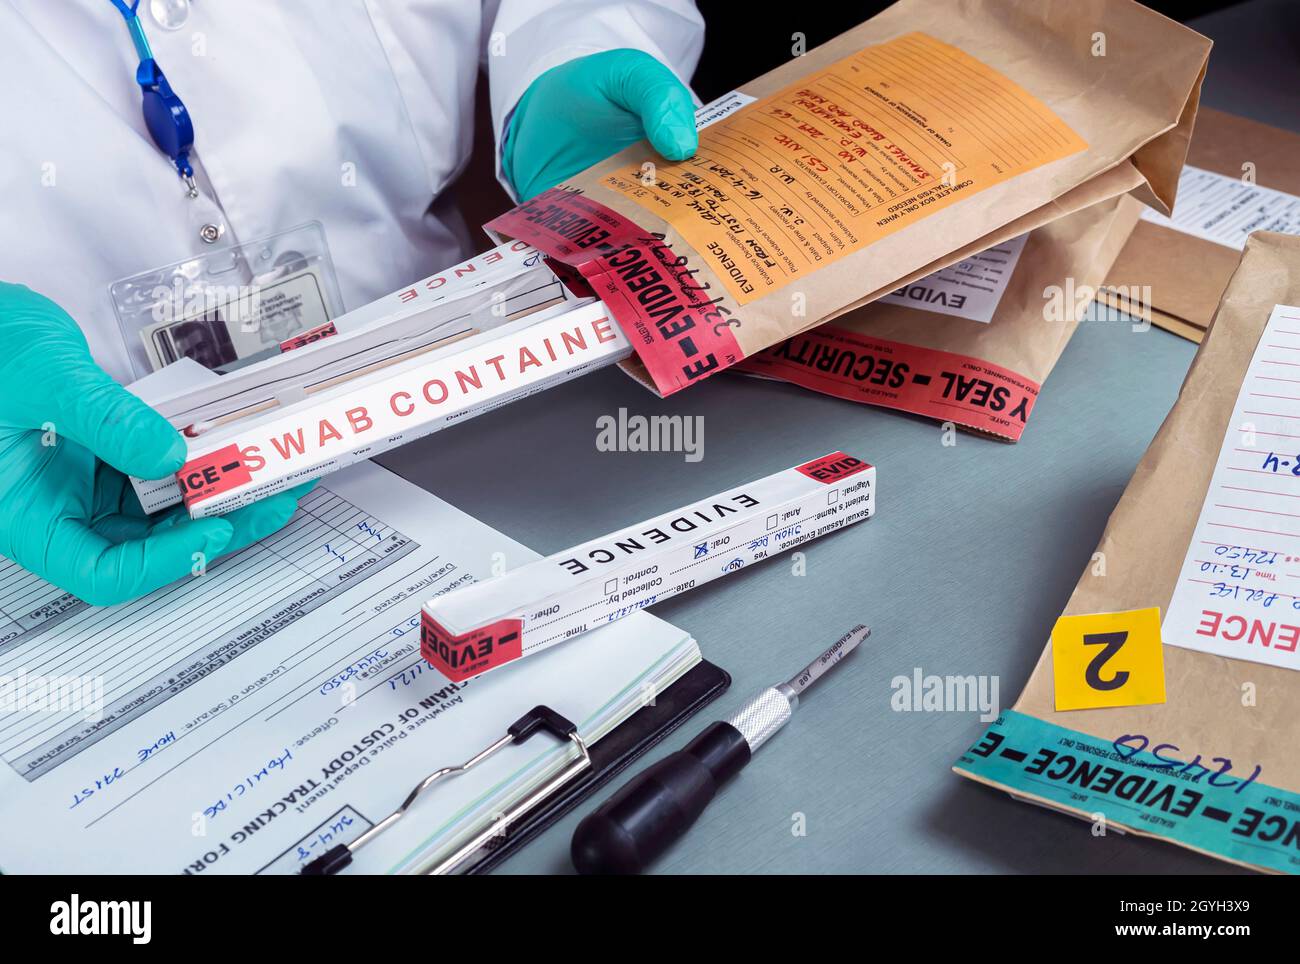 La police judiciaire vérifie les dossiers contre les preuves dans le laboratoire de crime, image conceptuelle Banque D'Images